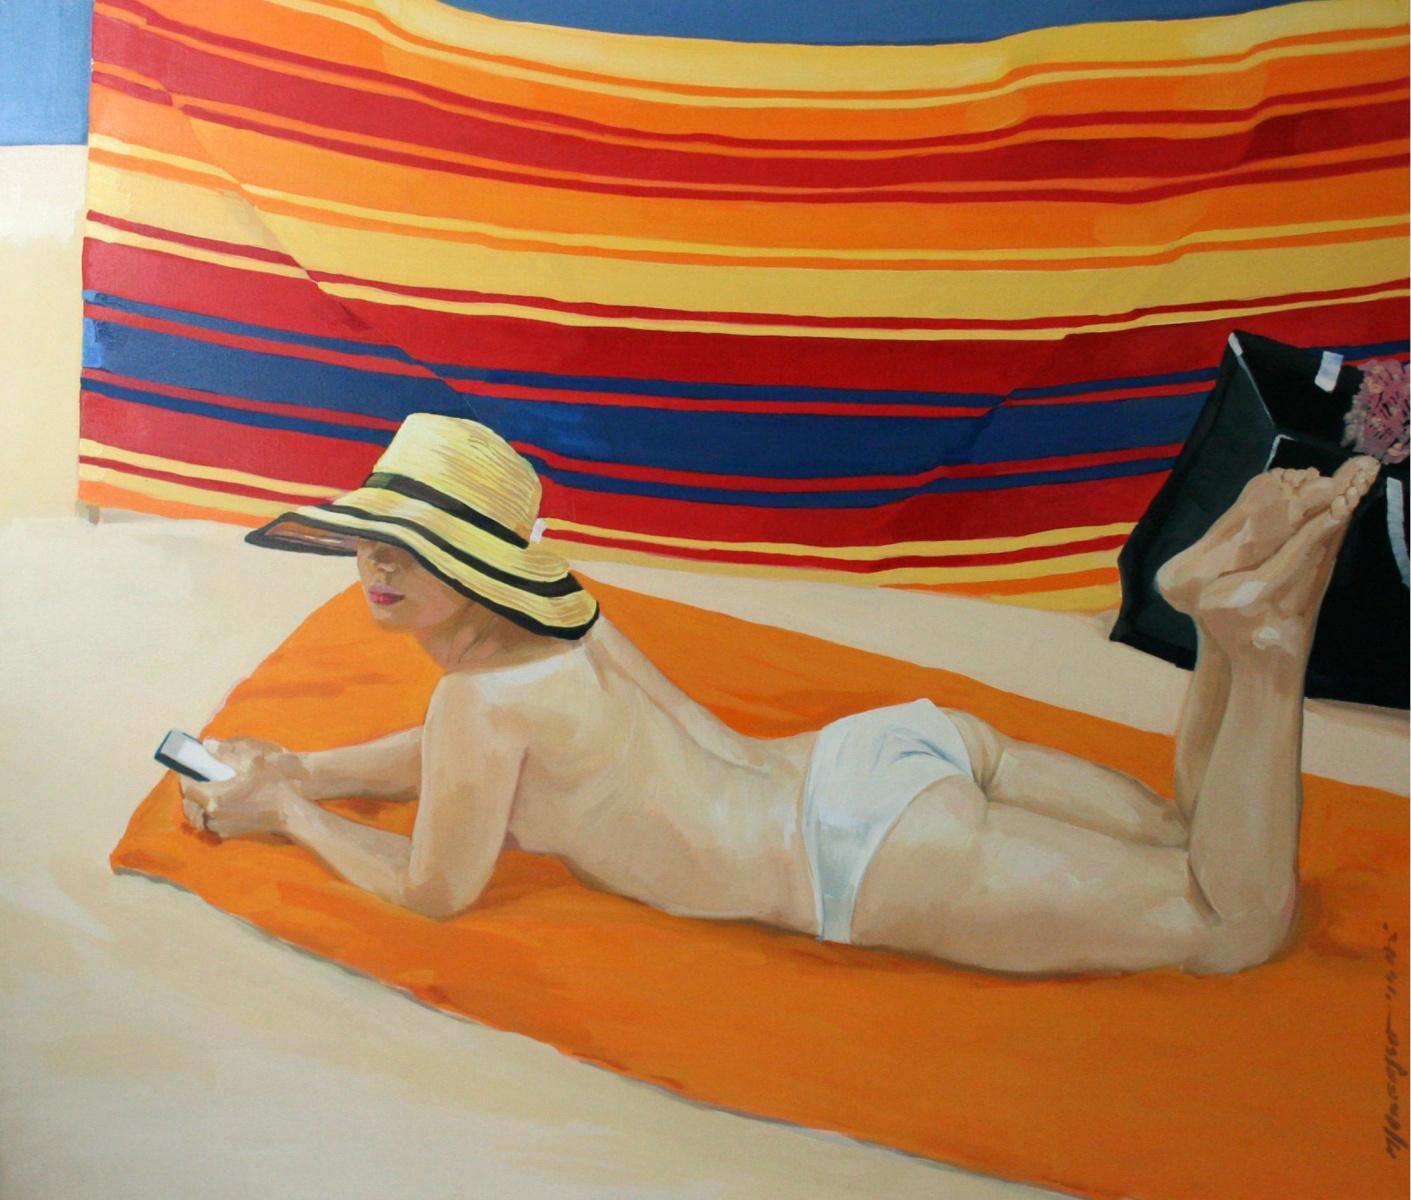 A Beach Screem - Peinture à l'huile sur toile contemporaine, peinture réaliste figurative